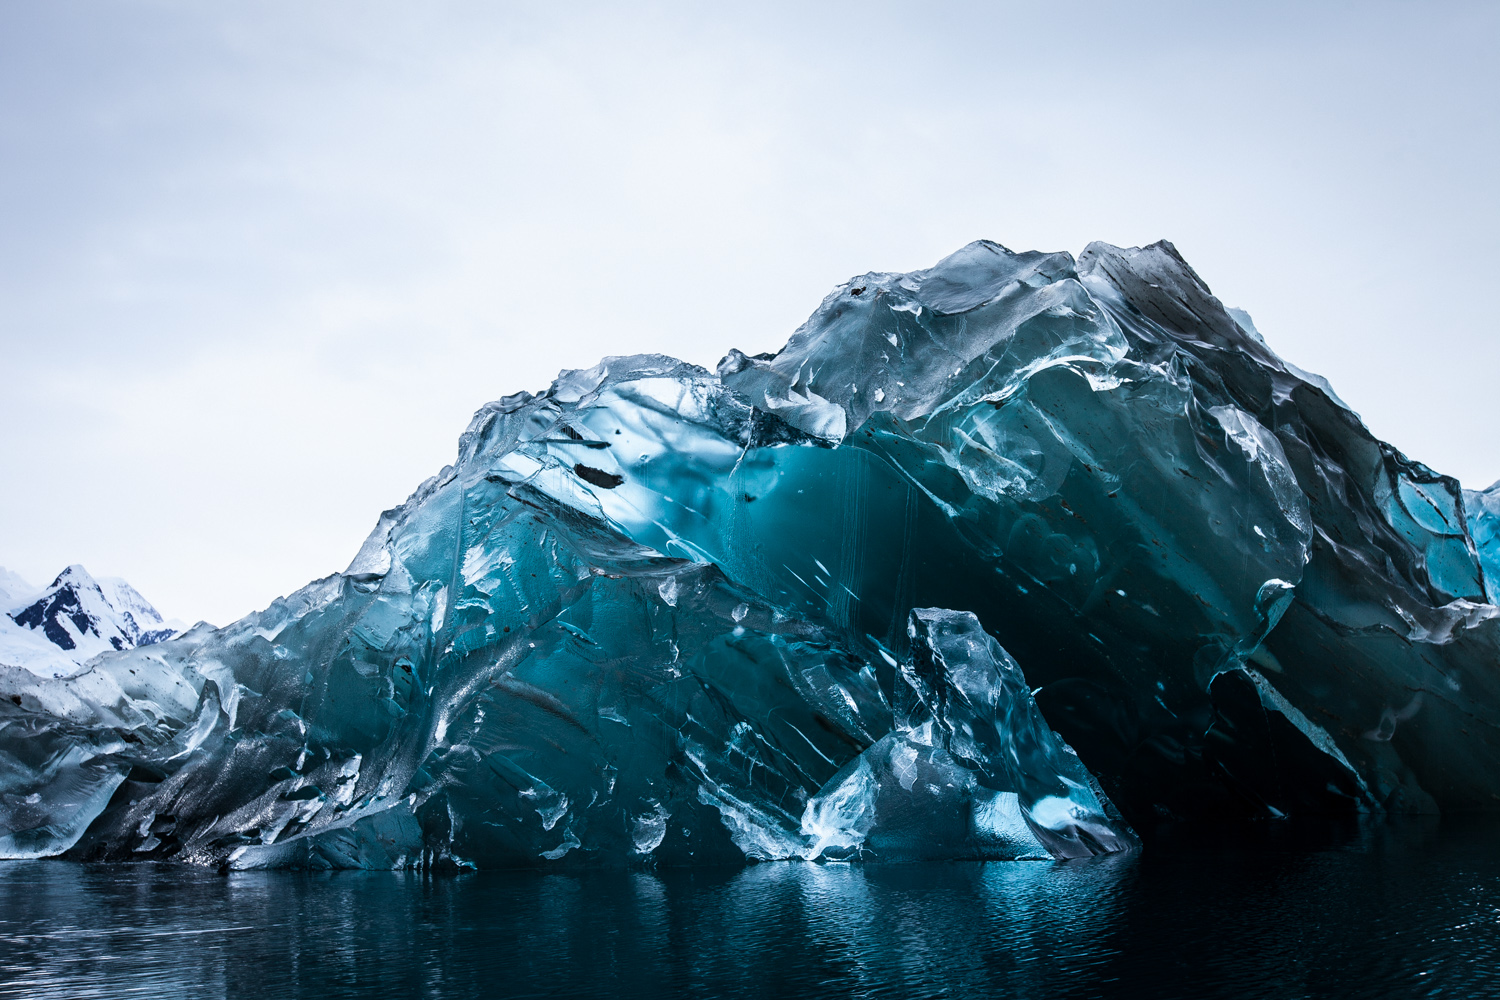 Il fascino nascosto degli iceberg "ribaltati"